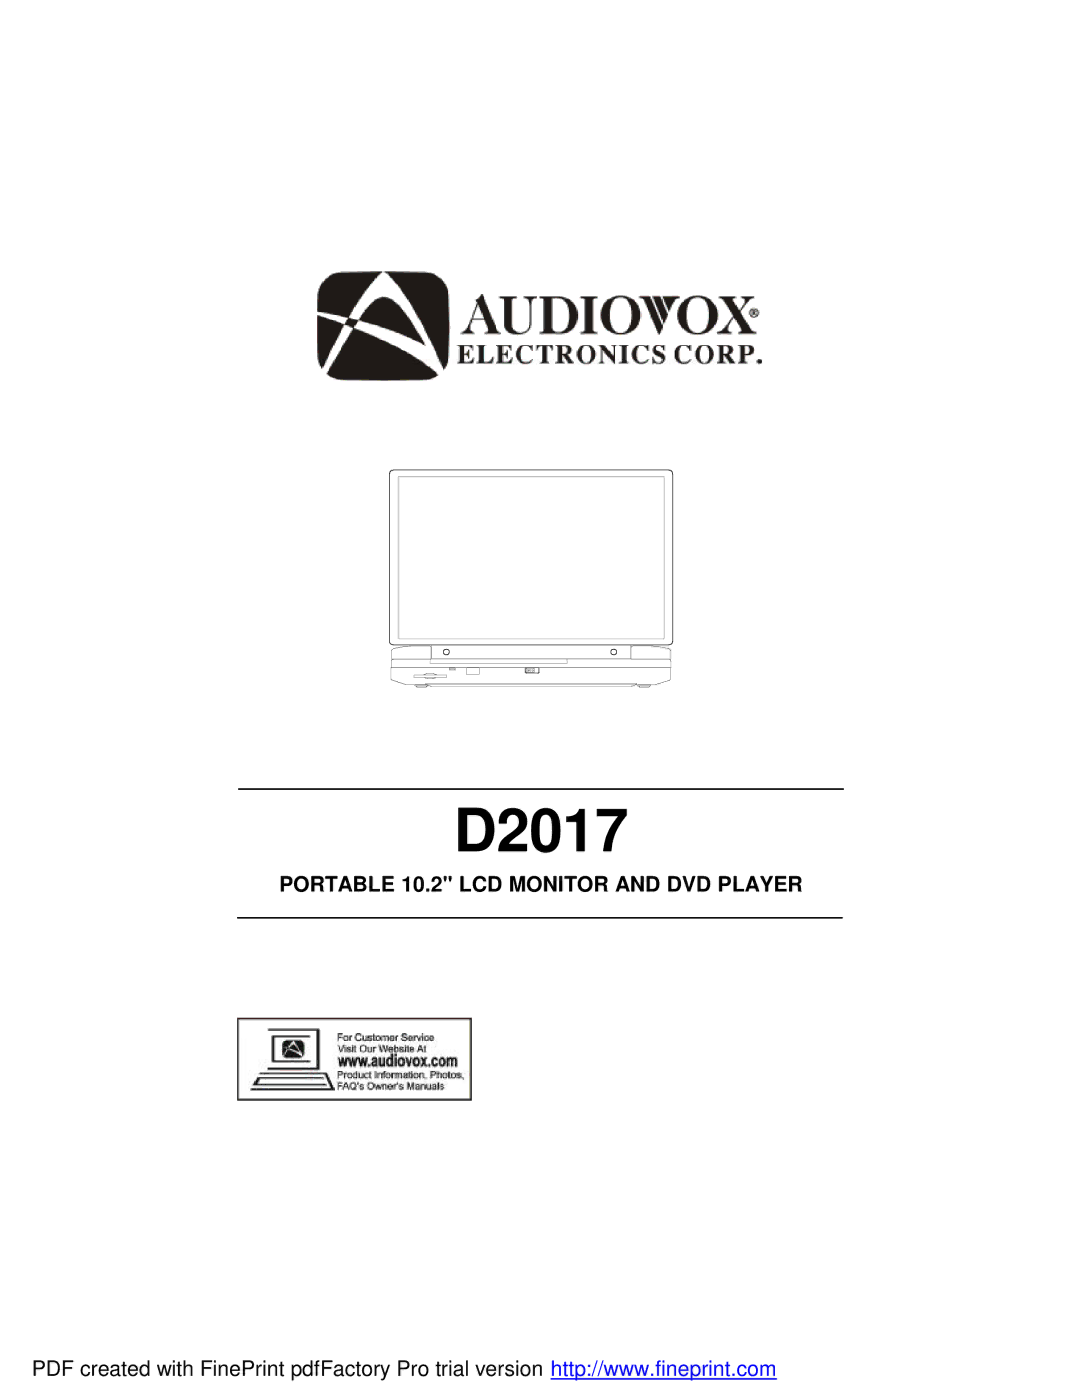 Audiovox D2017 manual 